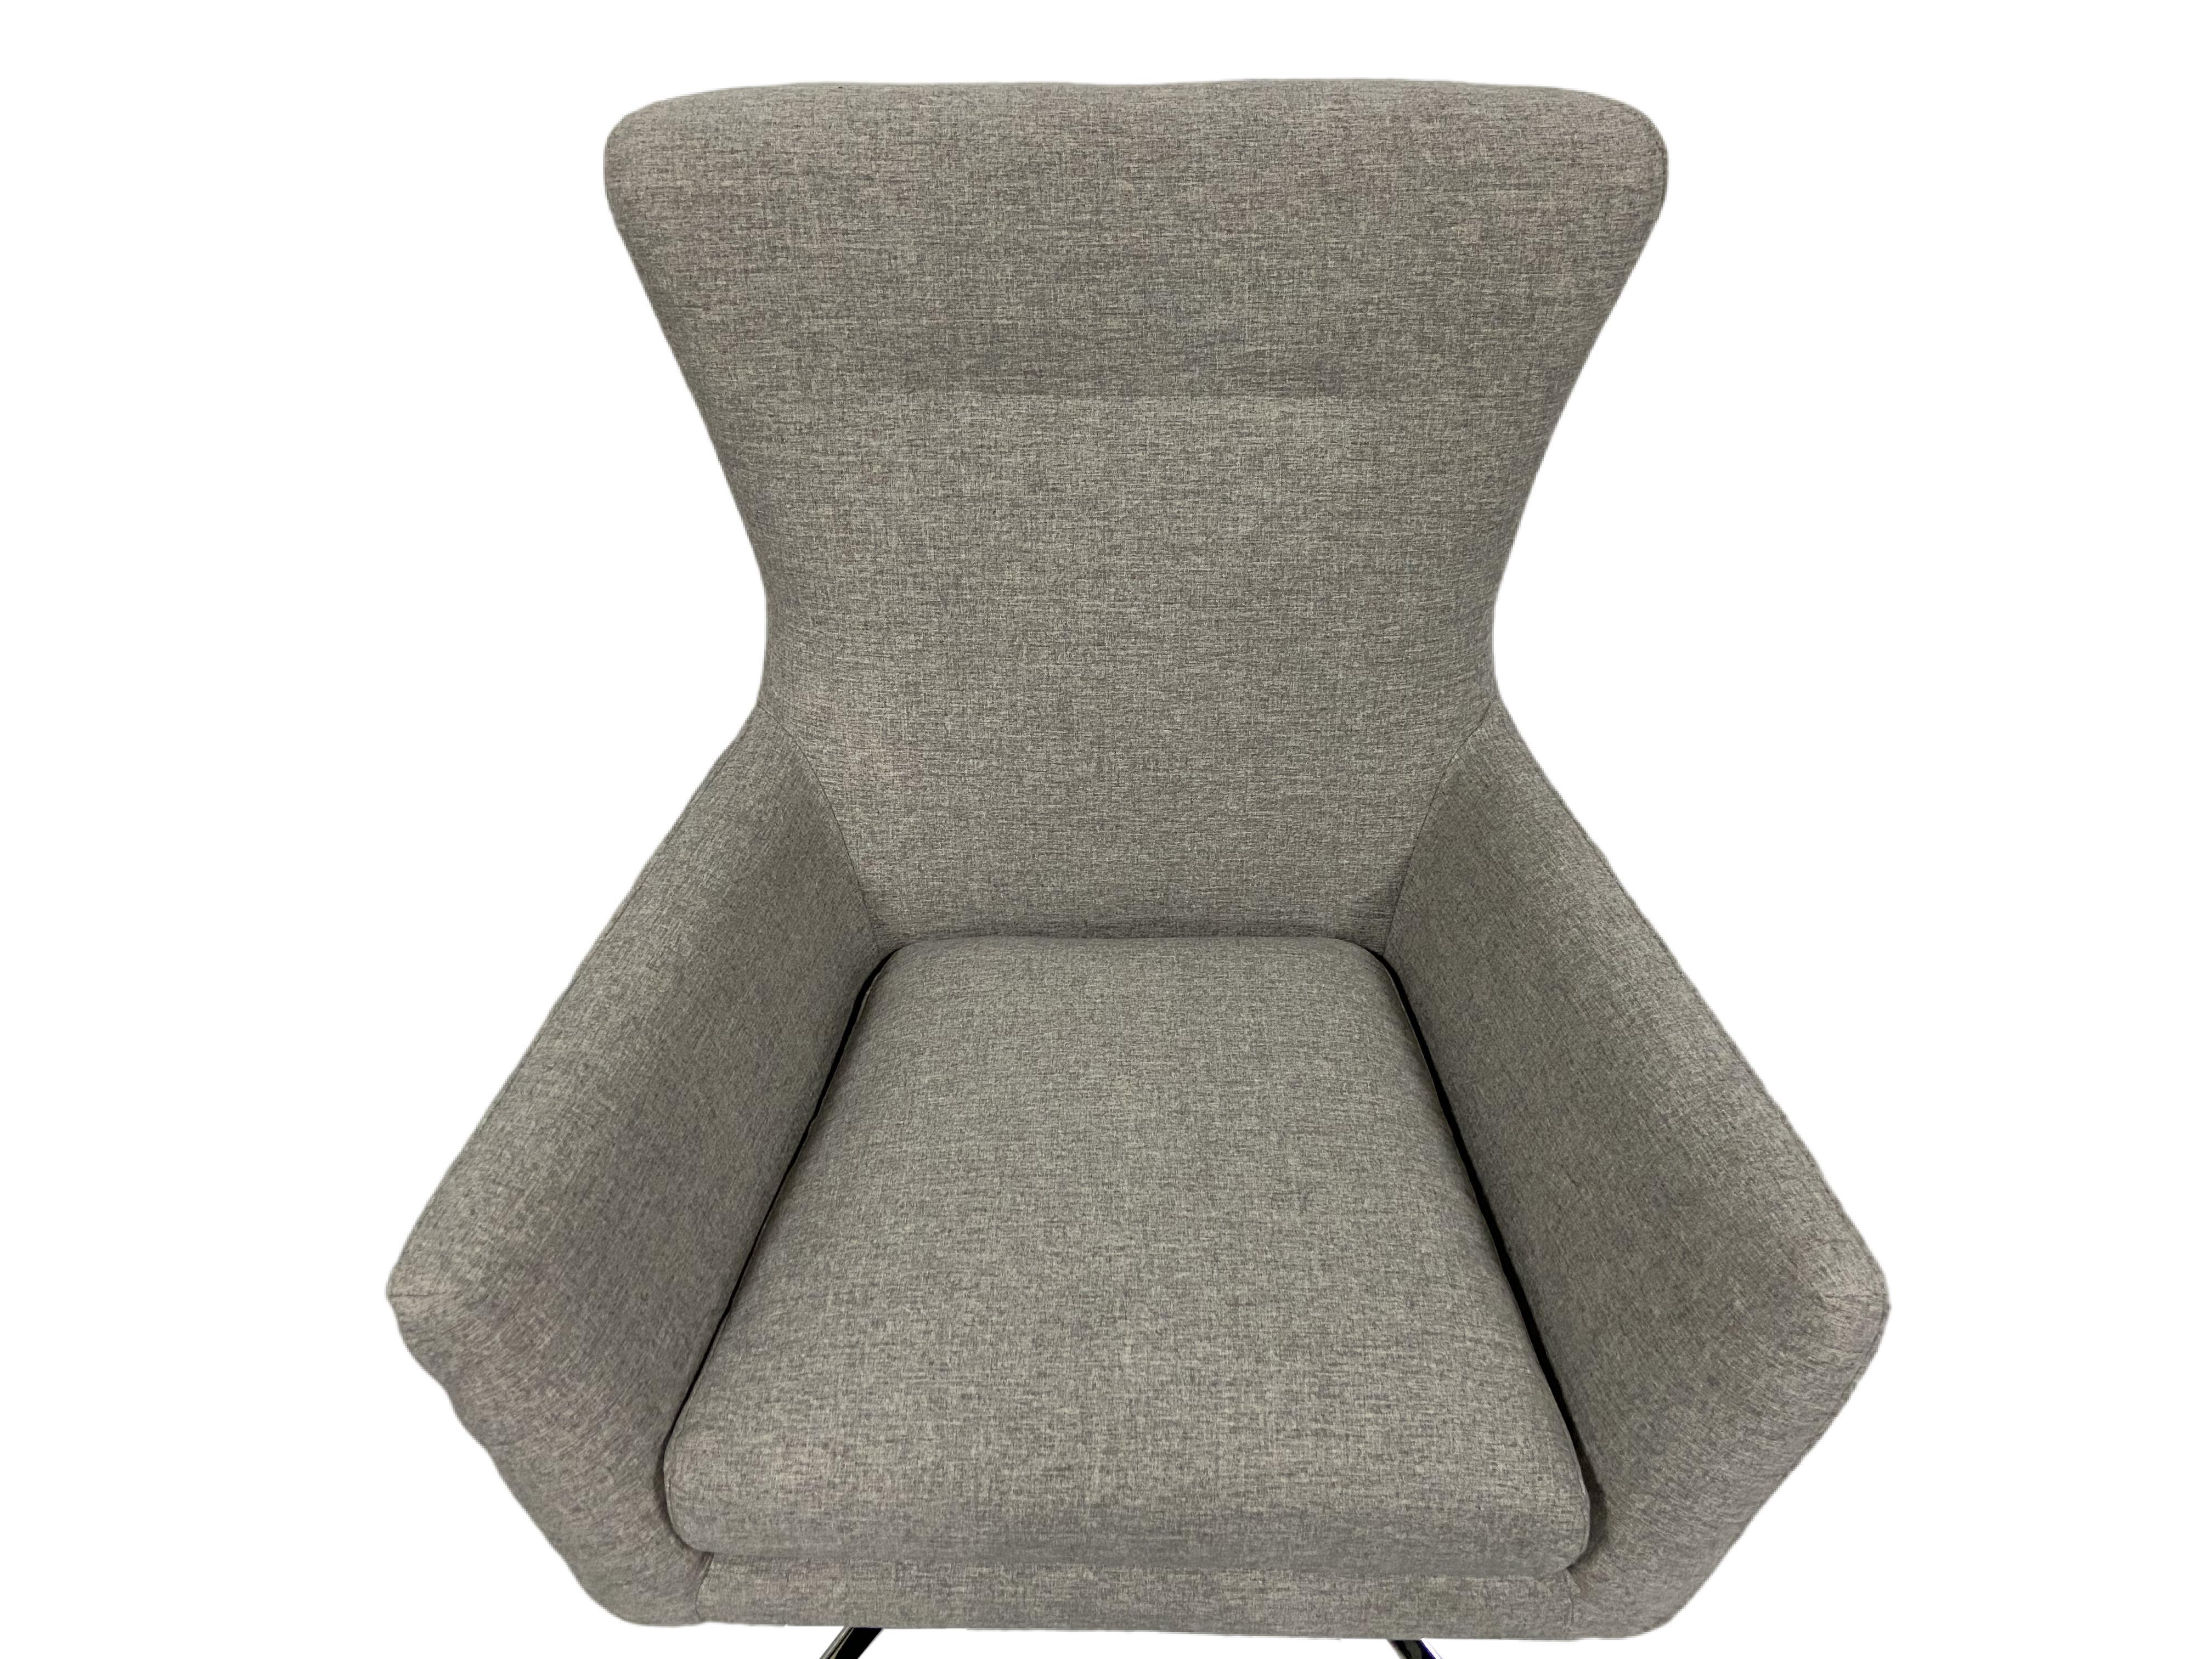 UBesGoo Modern Style Comfortable Swivel Lounge Chair - image 4 of 7